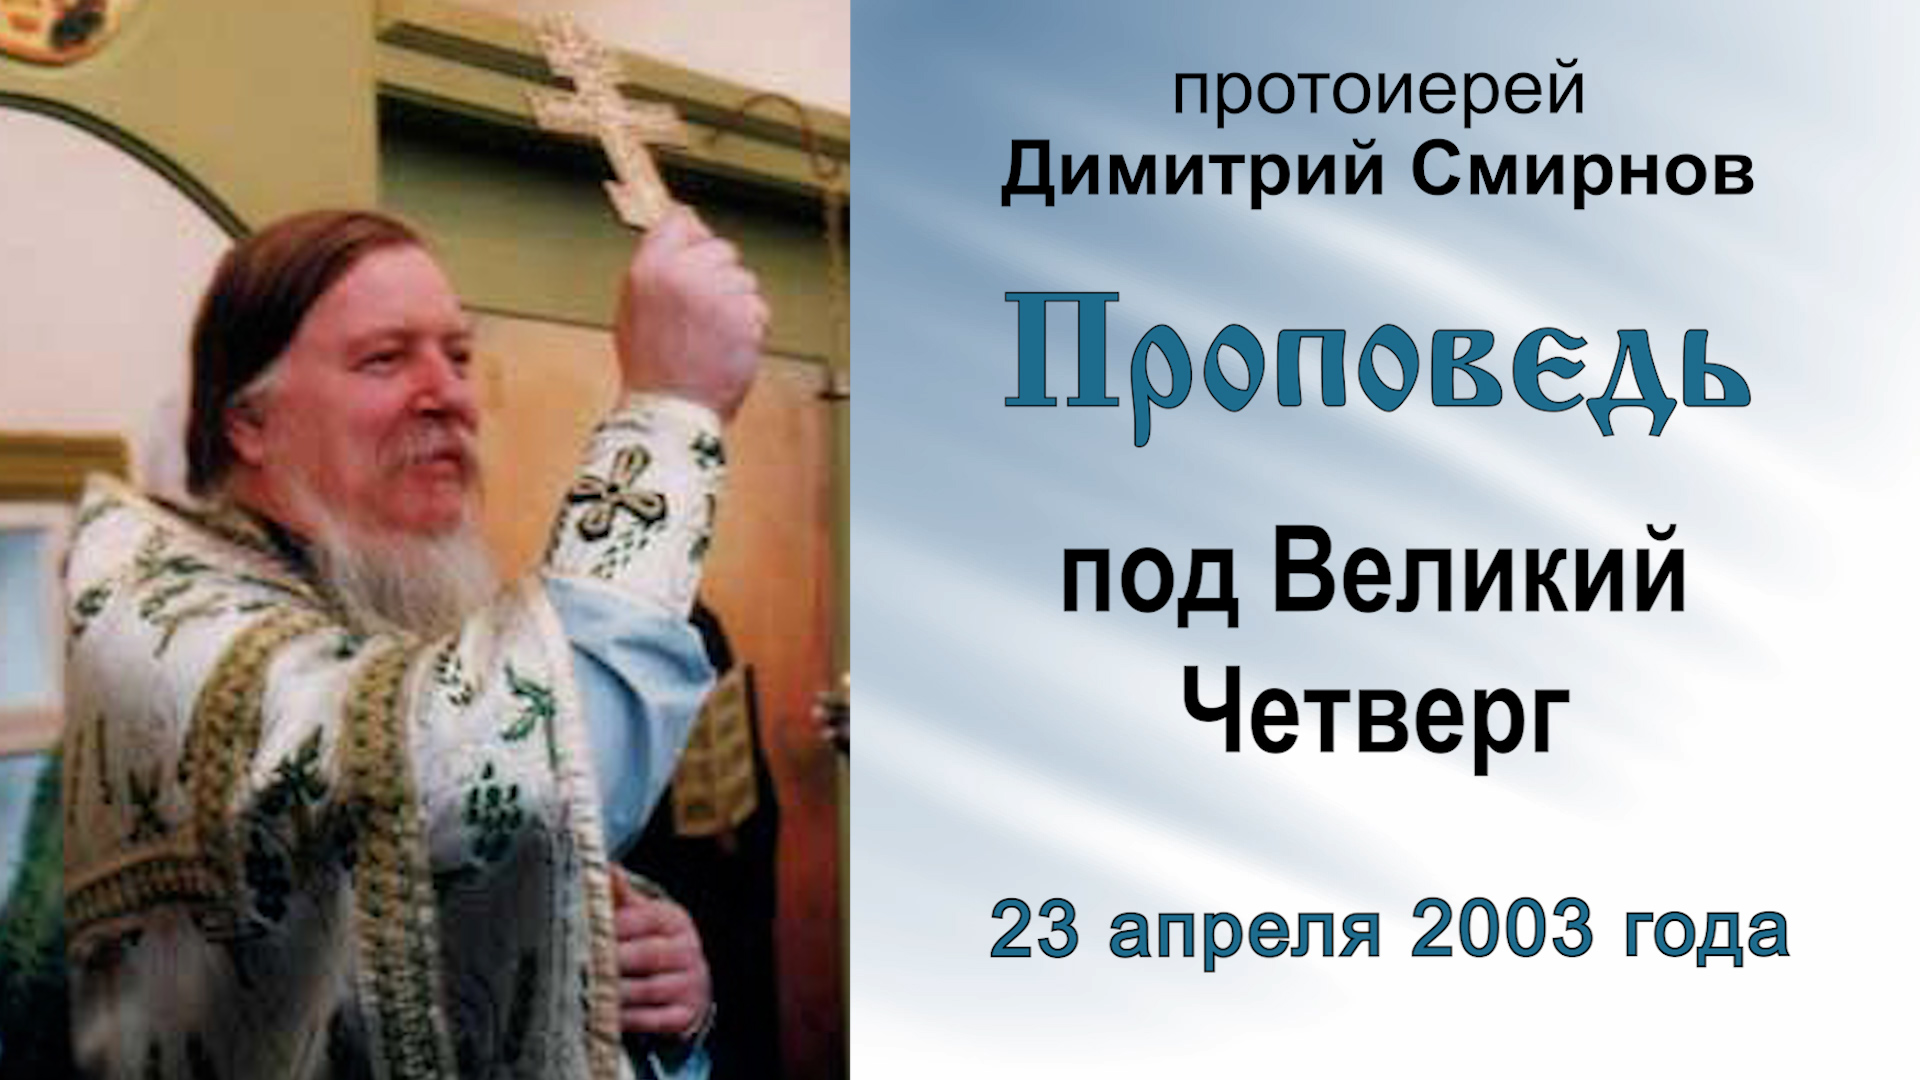 Проповедь под Великий Четверг (2003.04.23). Протоиерей Димитрий Смирнов